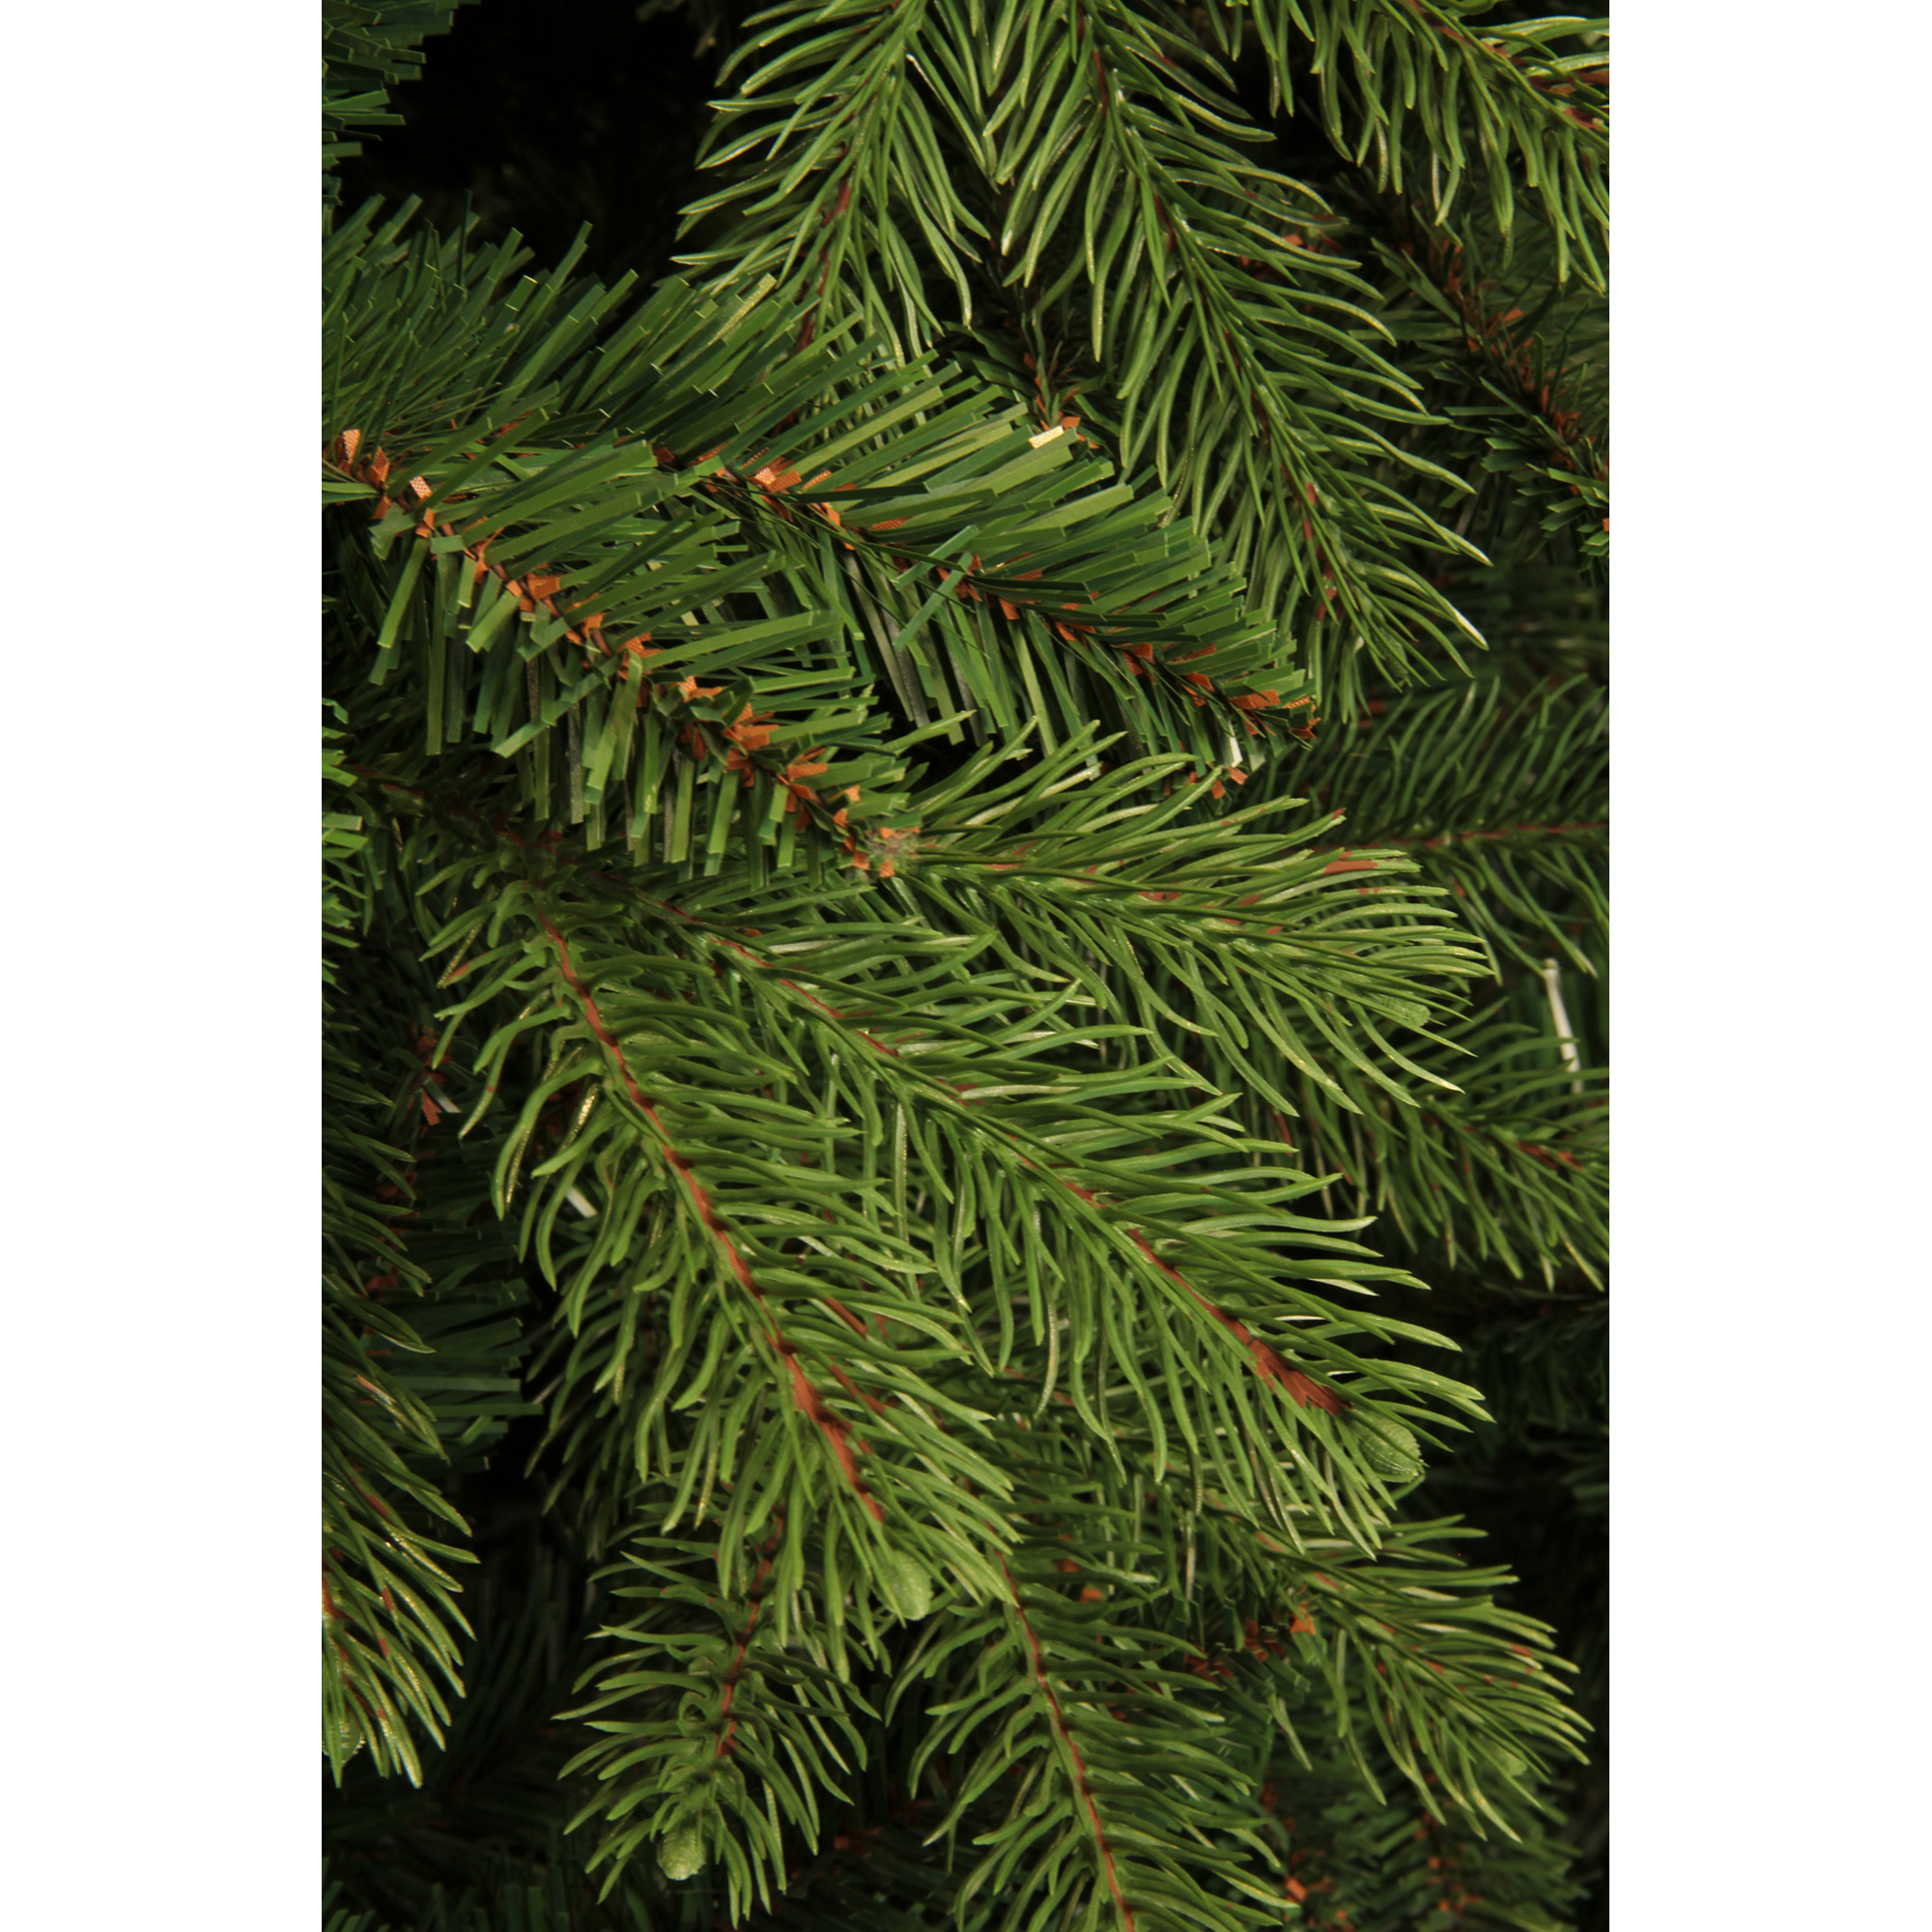 Künstlicher Weihnachtsbaum 'Brampton' grün/frosted 185 cm + product picture